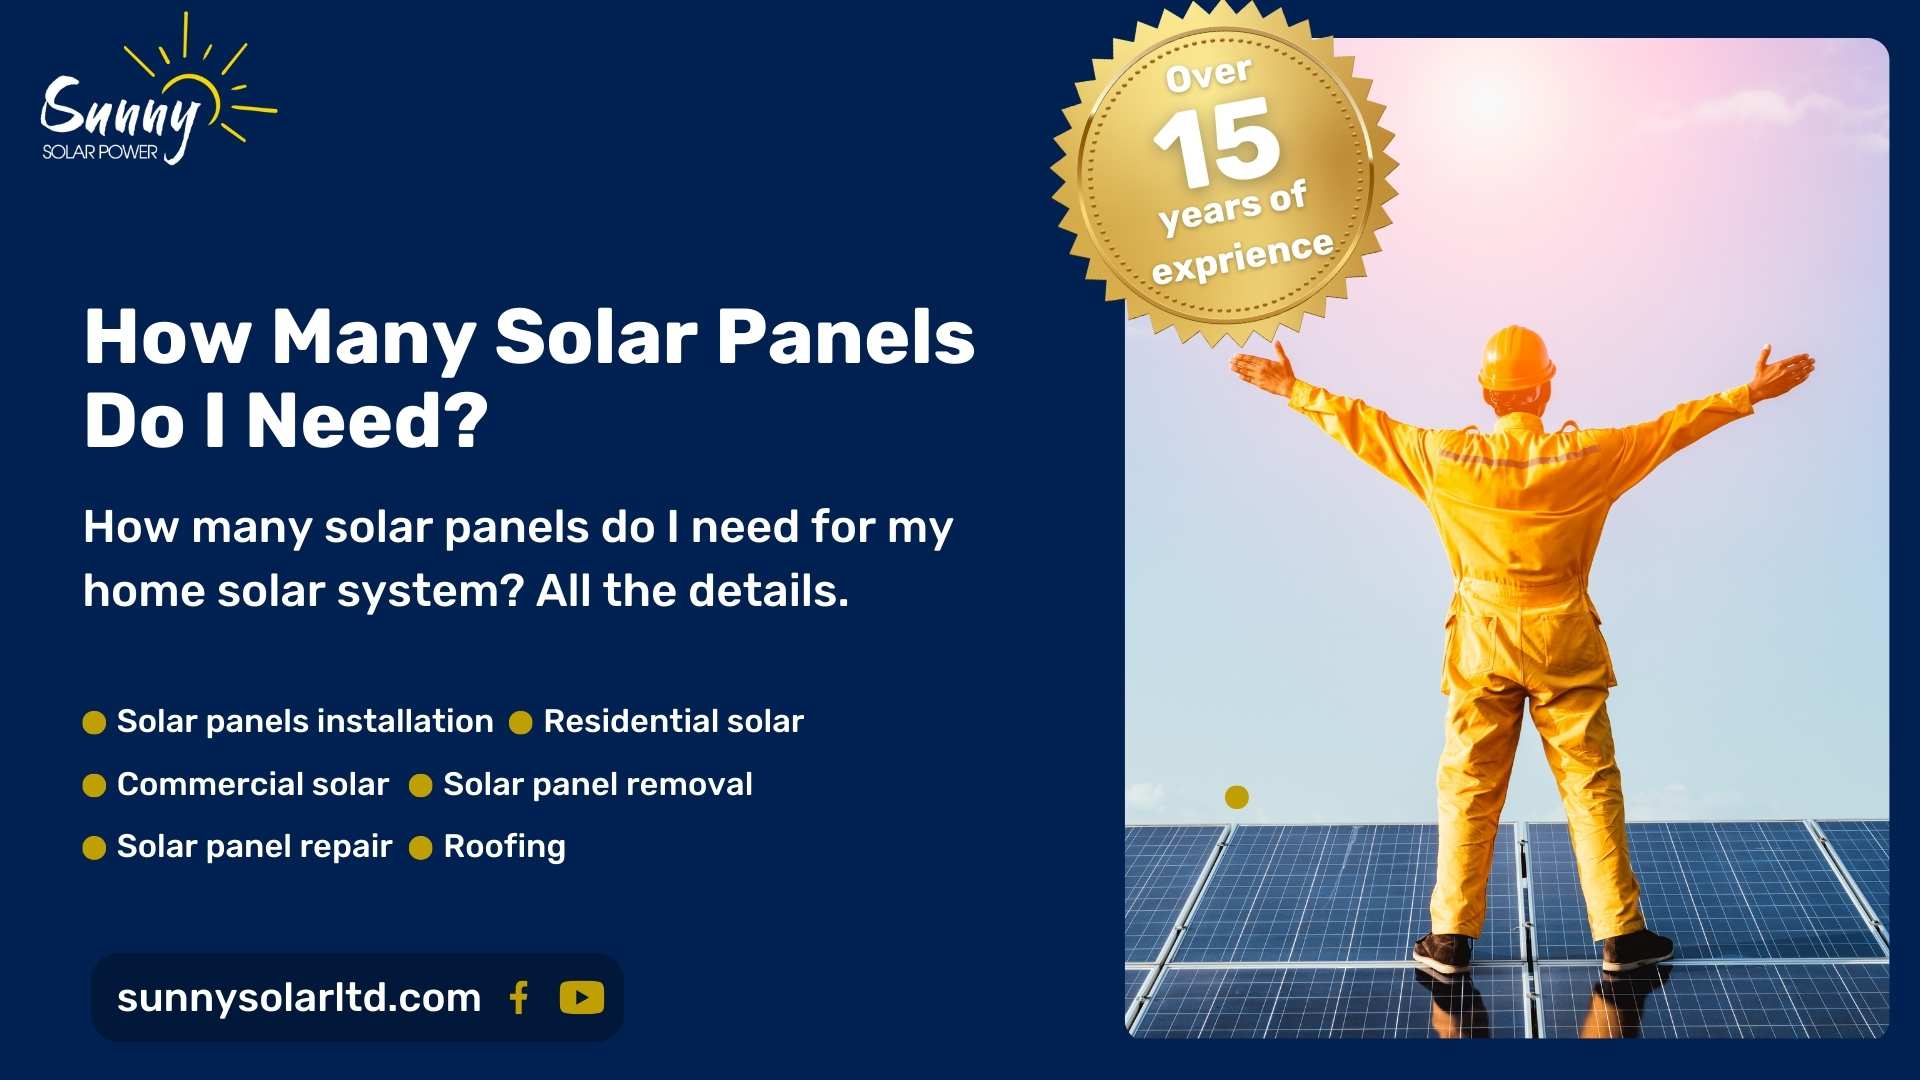 How many solar panels do i need?